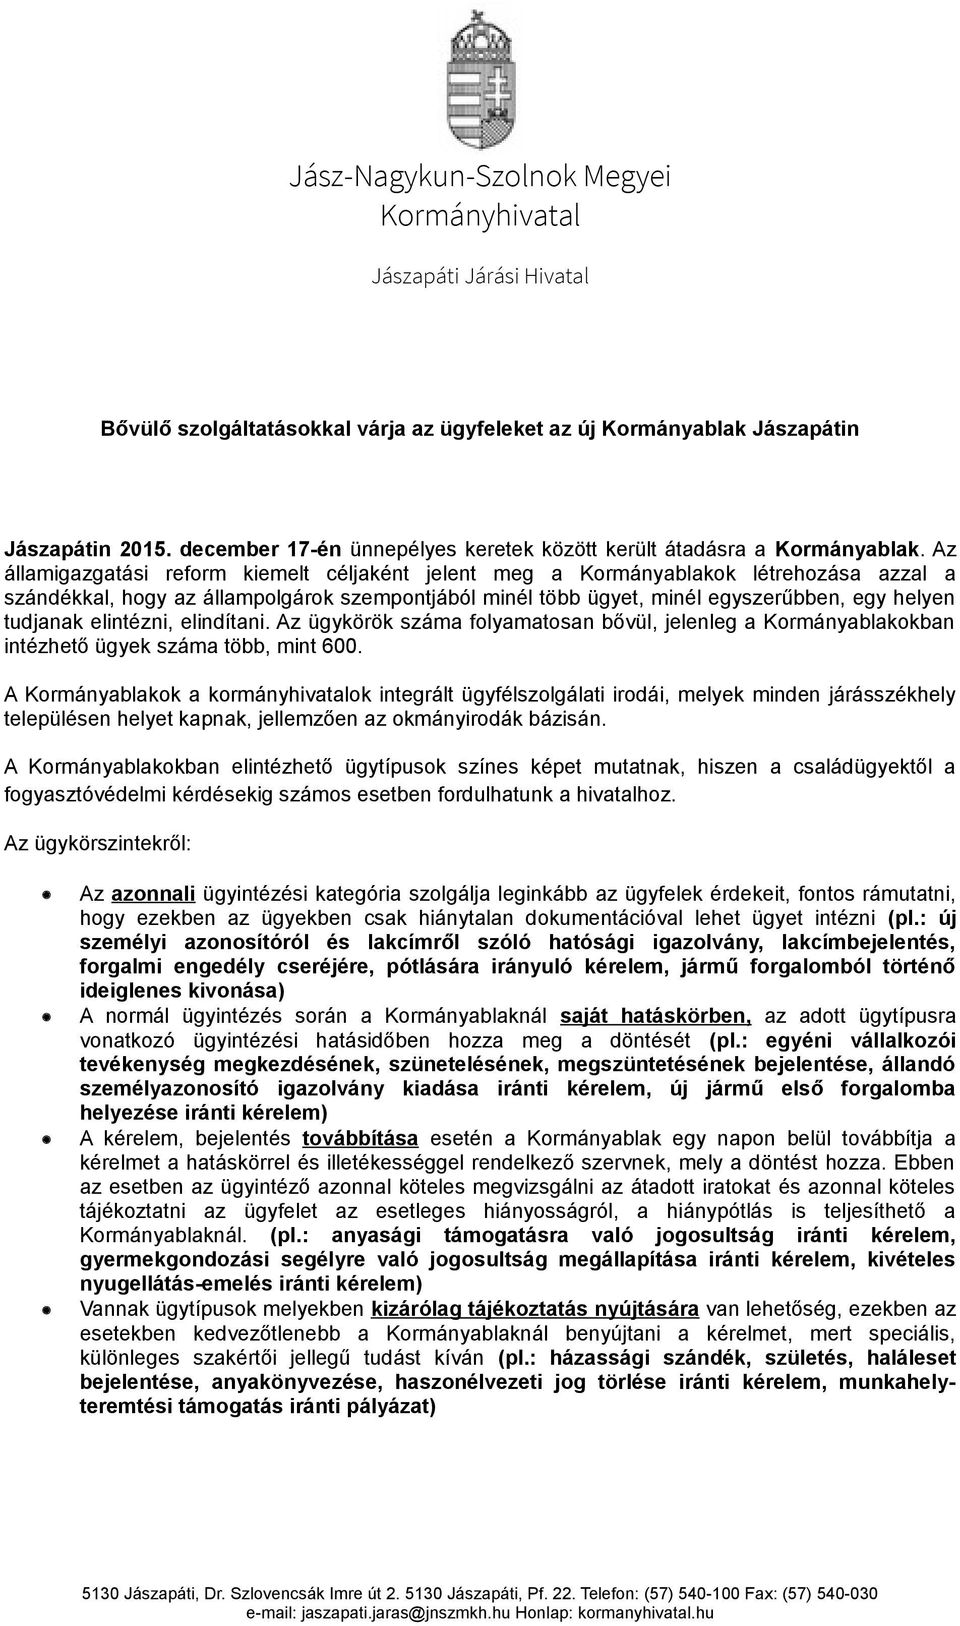 Jász-Nagykun-Szolnok Megyei Kormányhivatal - PDF Ingyenes letöltés